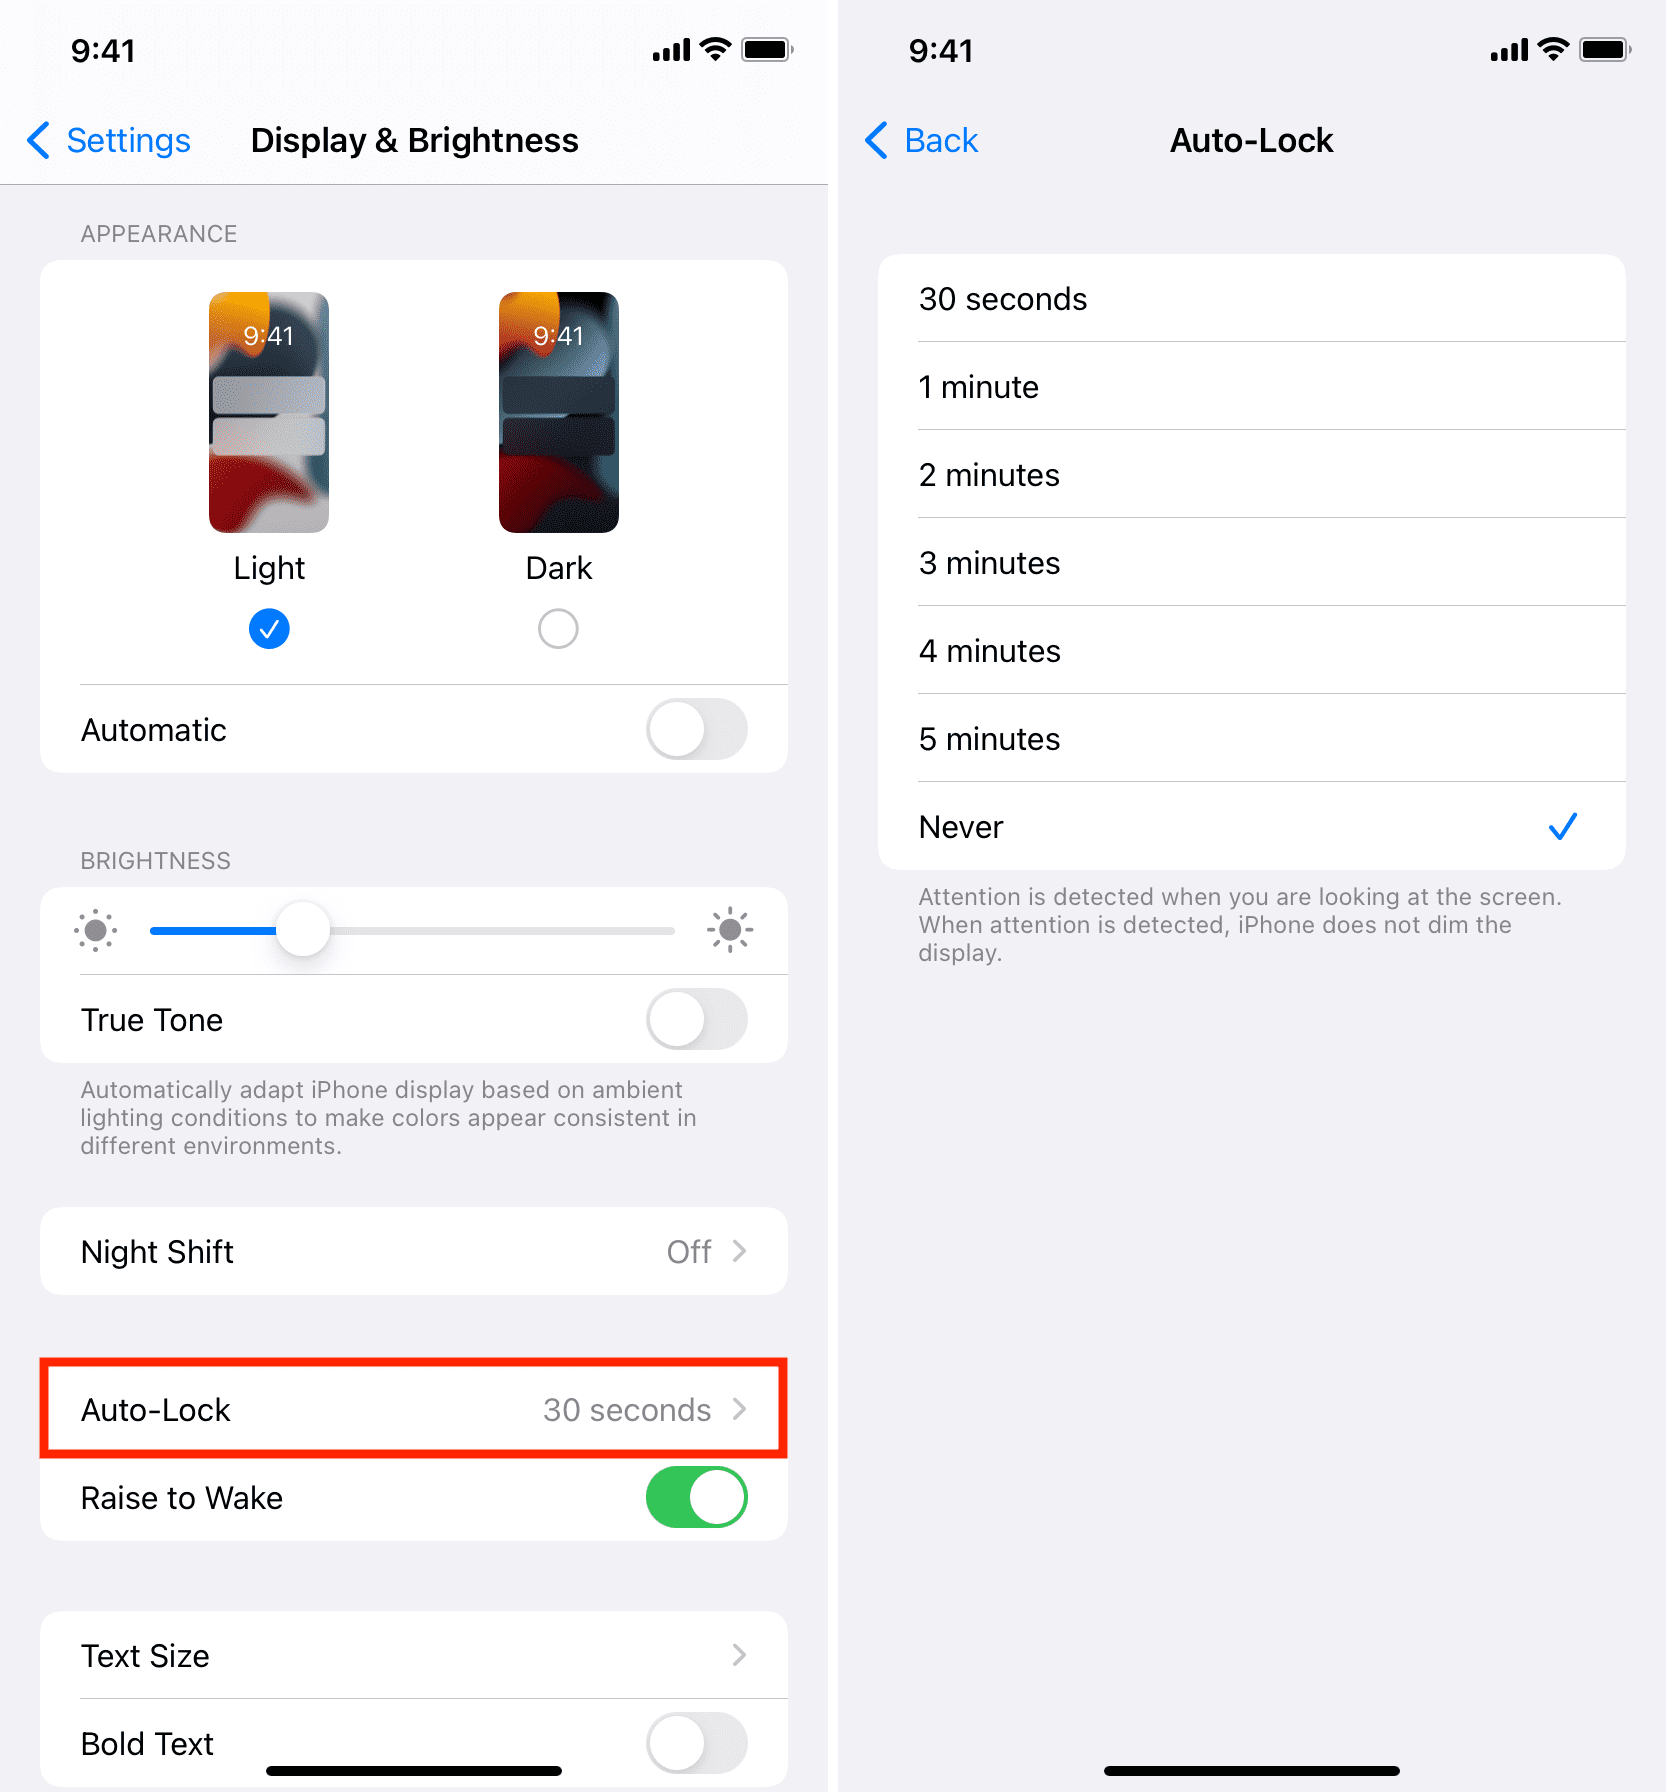 Auto-Lock settings on iPhone